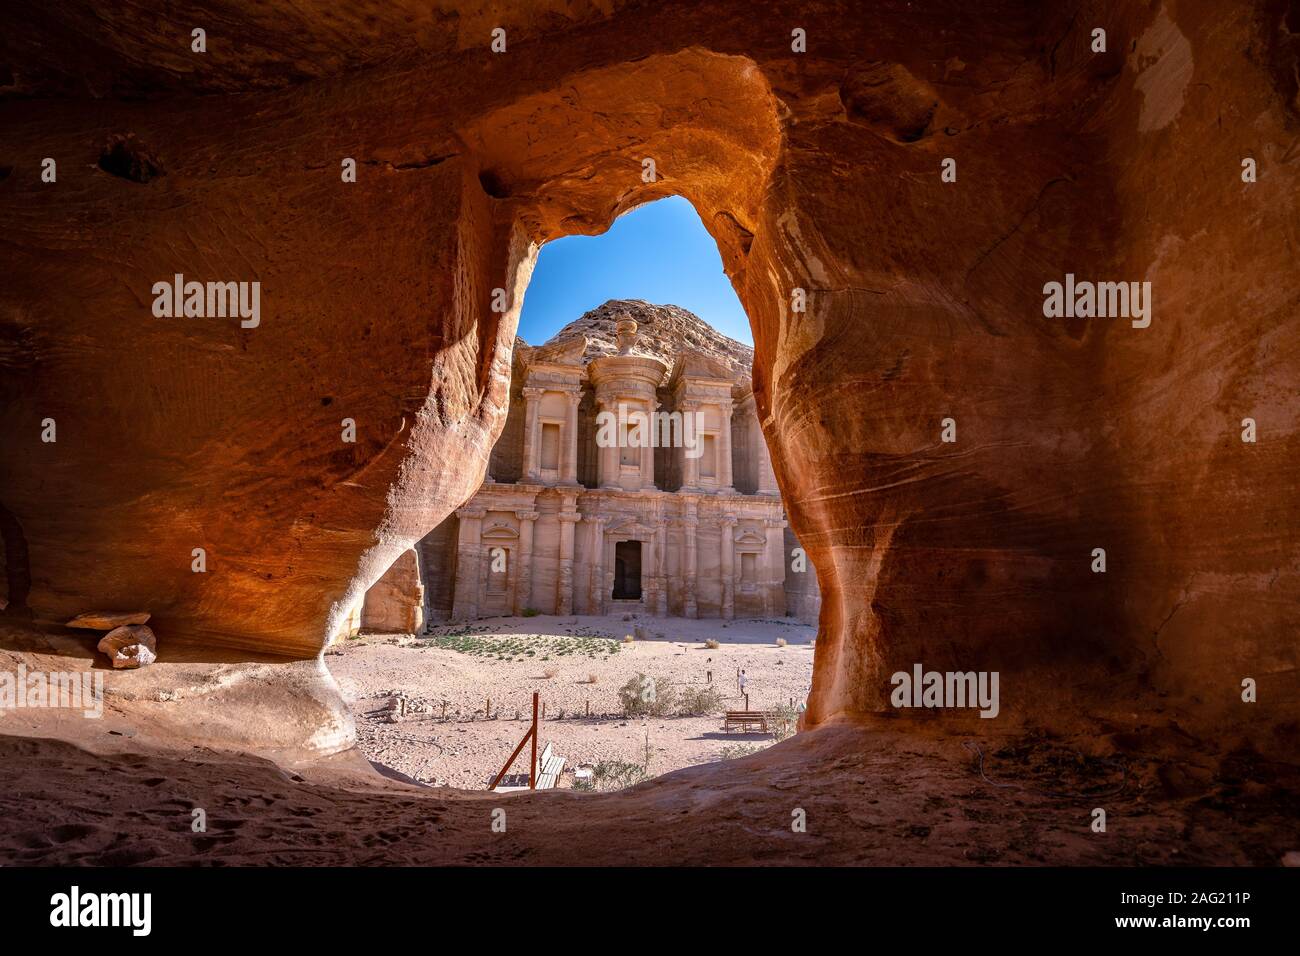 Ad Deir (das Kloster) - Eine monumentale Gebäude aus Stein in der antiken jordanischen Felsenstadt Petra geschnitzt Stockfoto